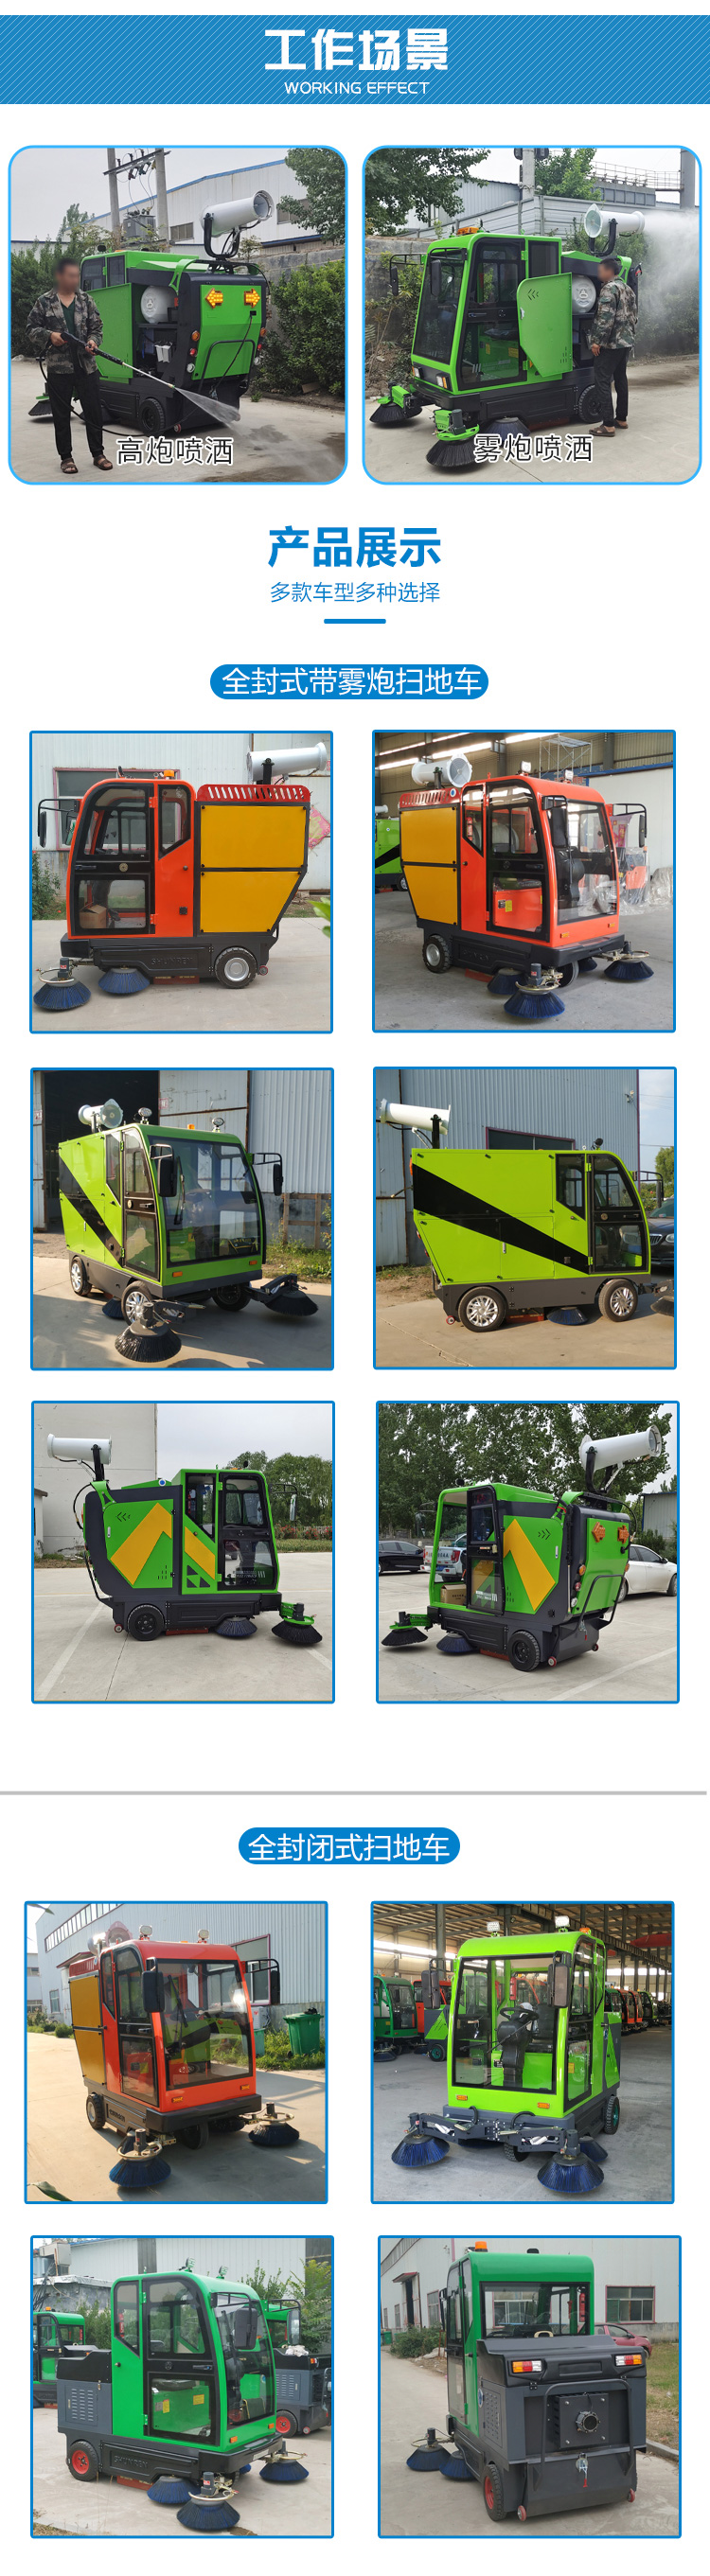 吸尘电动扫路车生产 物业电动扫路车 物业工厂道路清扫车